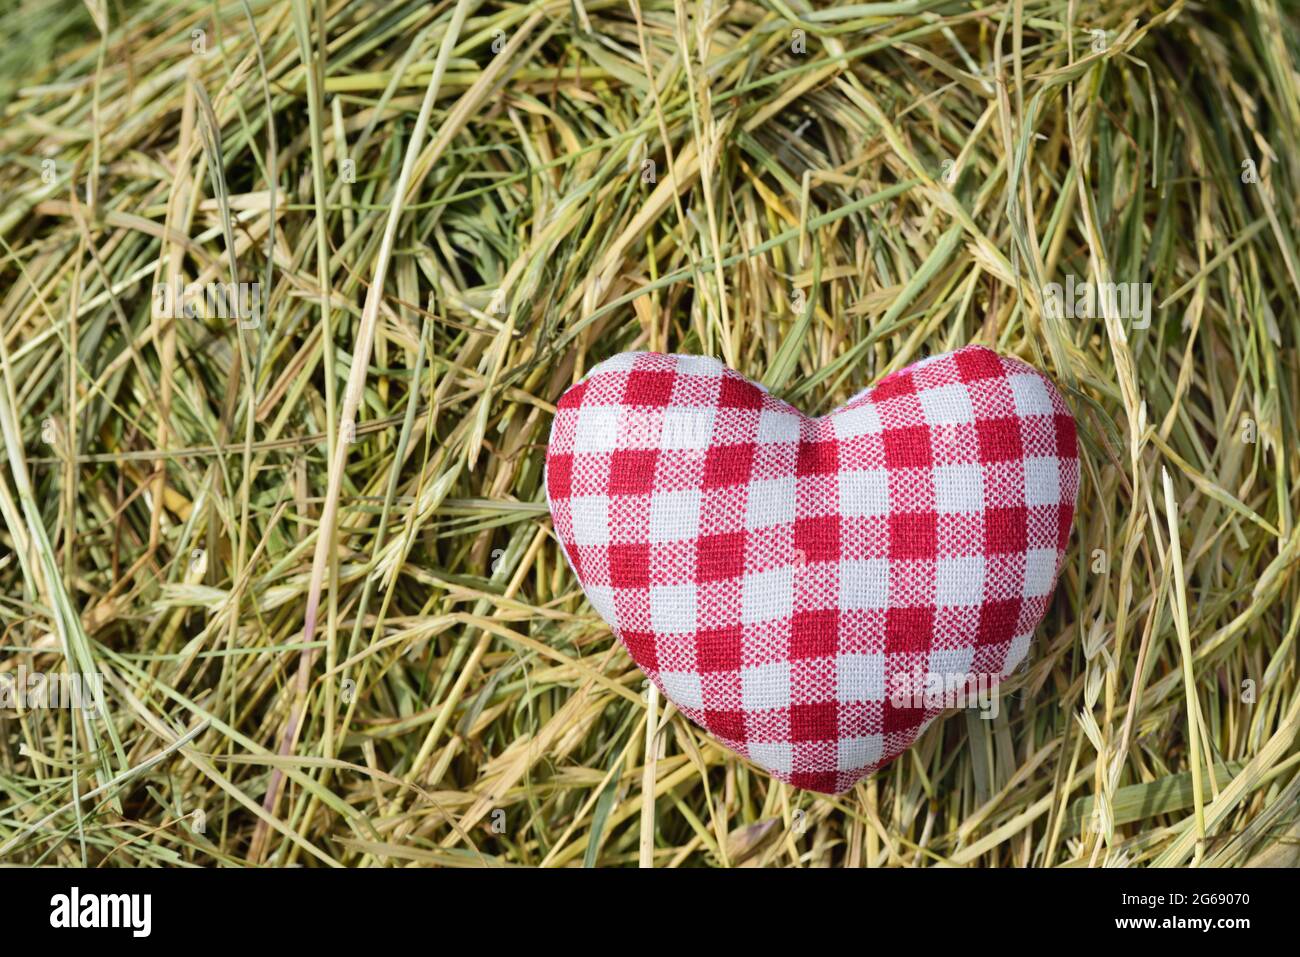 Su uno sfondo di fieno si trova un piccolo cuore fatto di tessuto rosso e bianco controllato per un idillio rurale Foto Stock